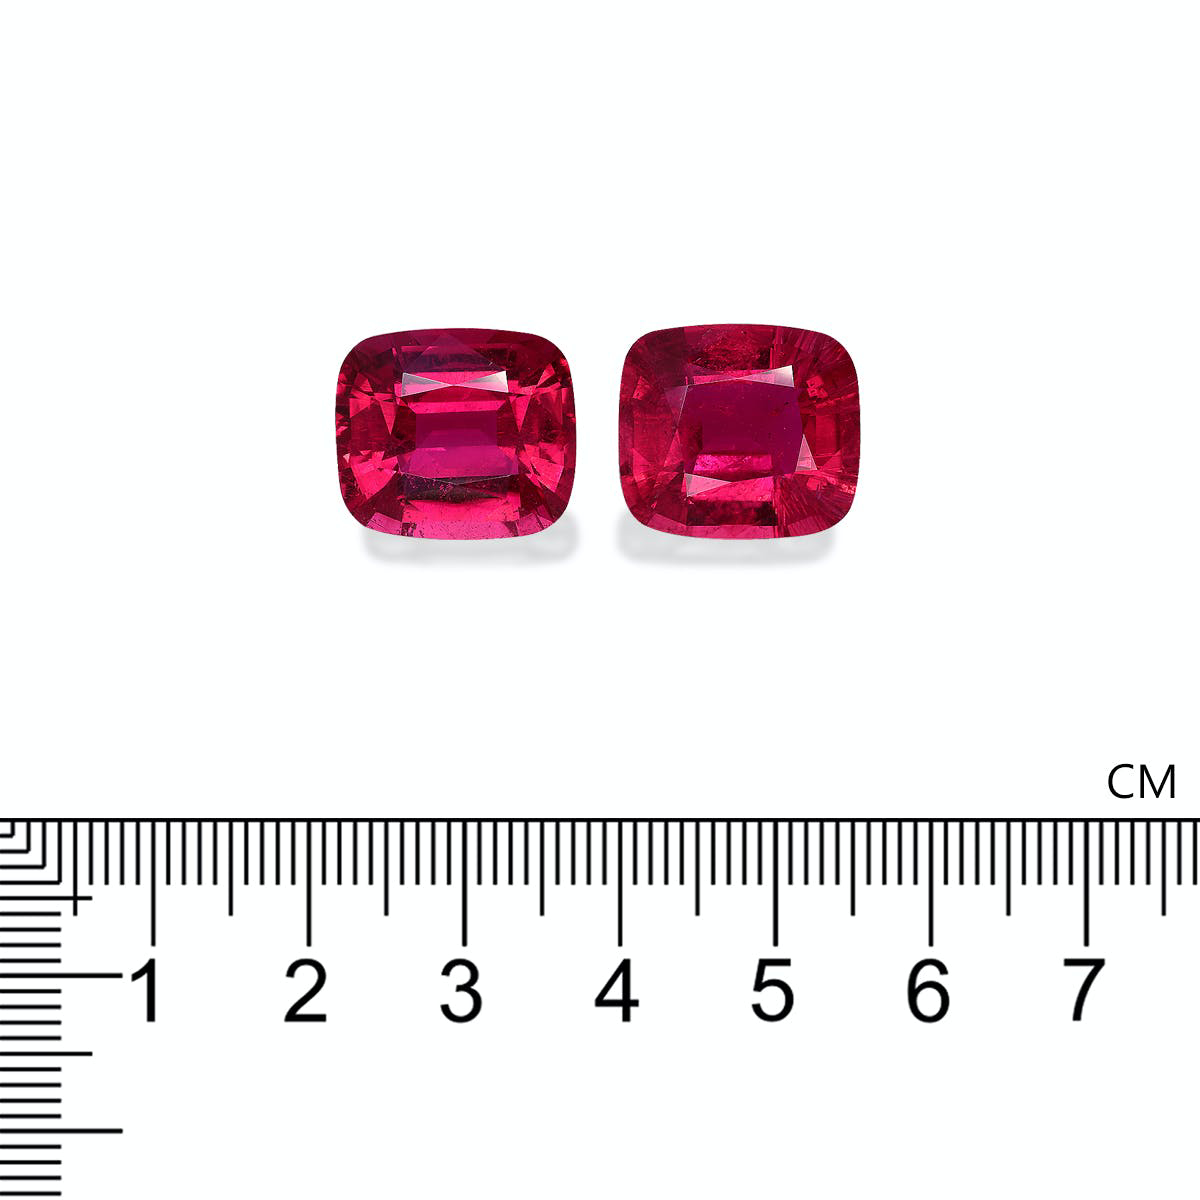 Vivid Pink Rubellite Tourmaline 28.59ct - Pair (RL1183)